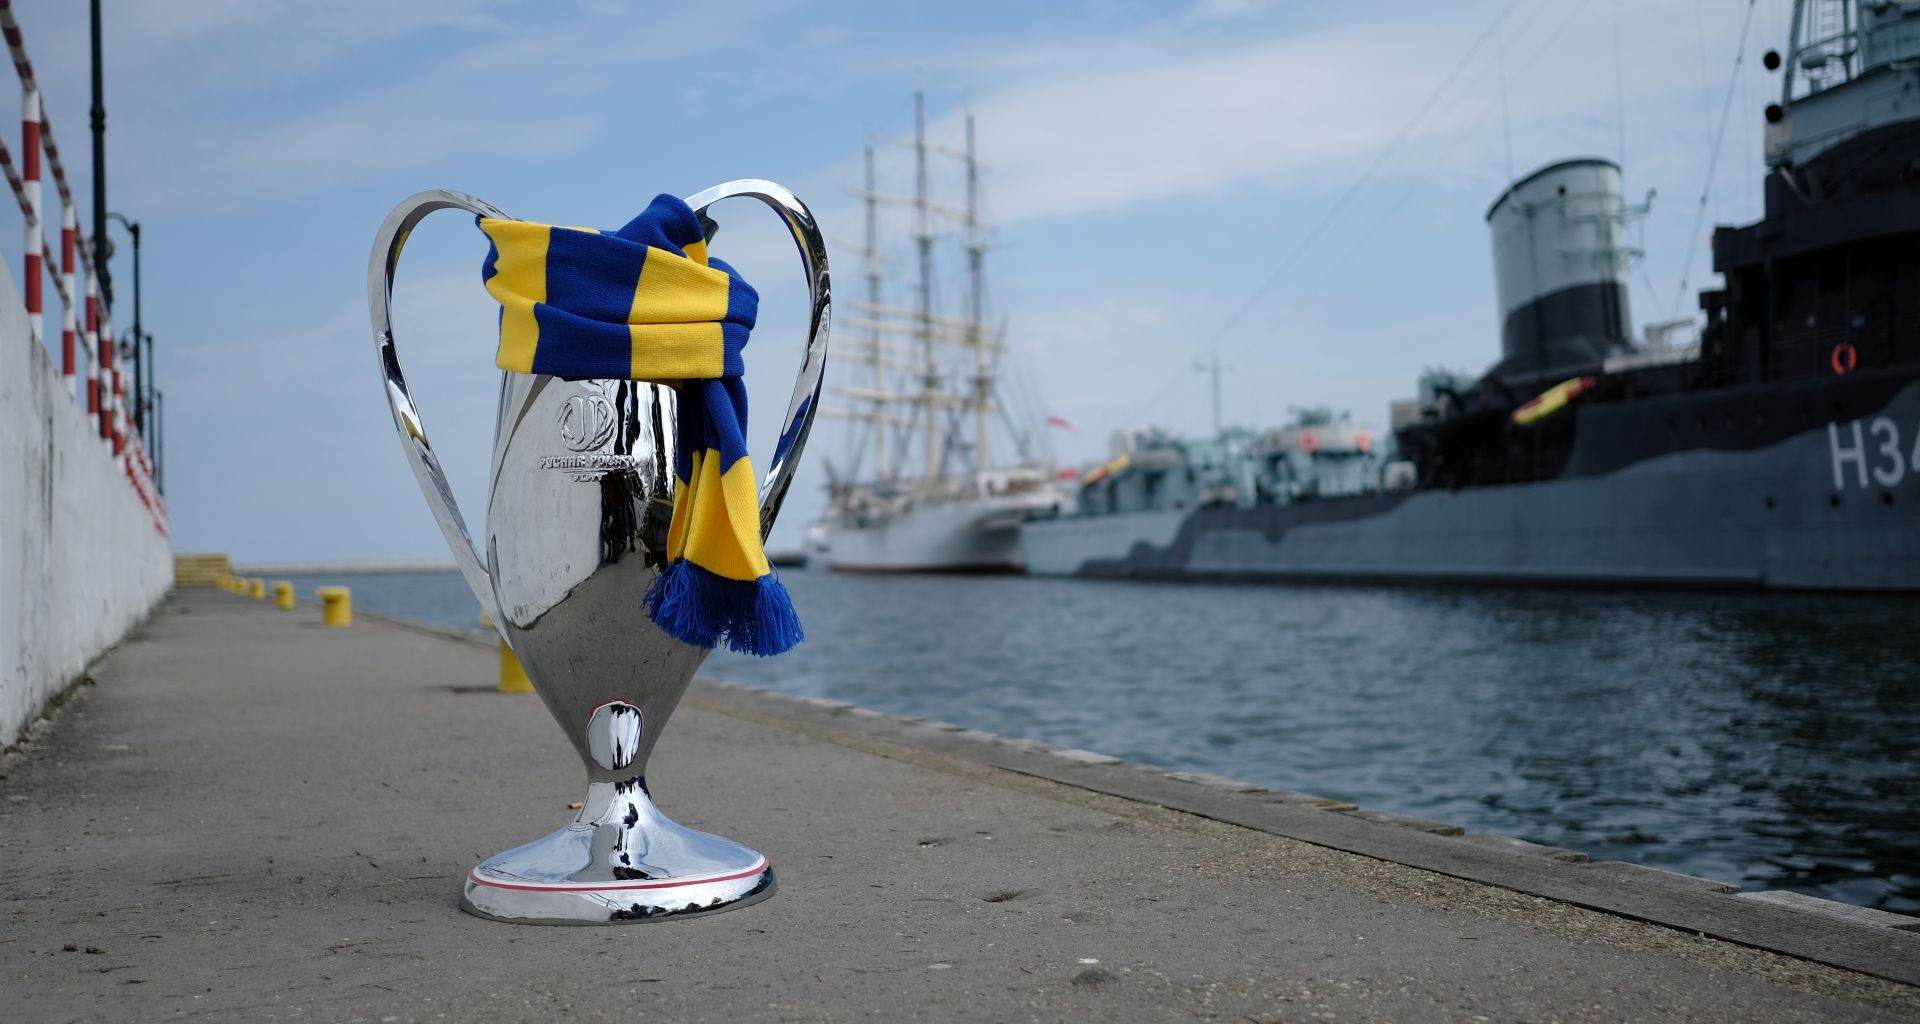 Puchar Polski owinięty żółto-niebieskim szalikiem stojący na jednym z nabrzeży. W tle ORP Błyskawica 